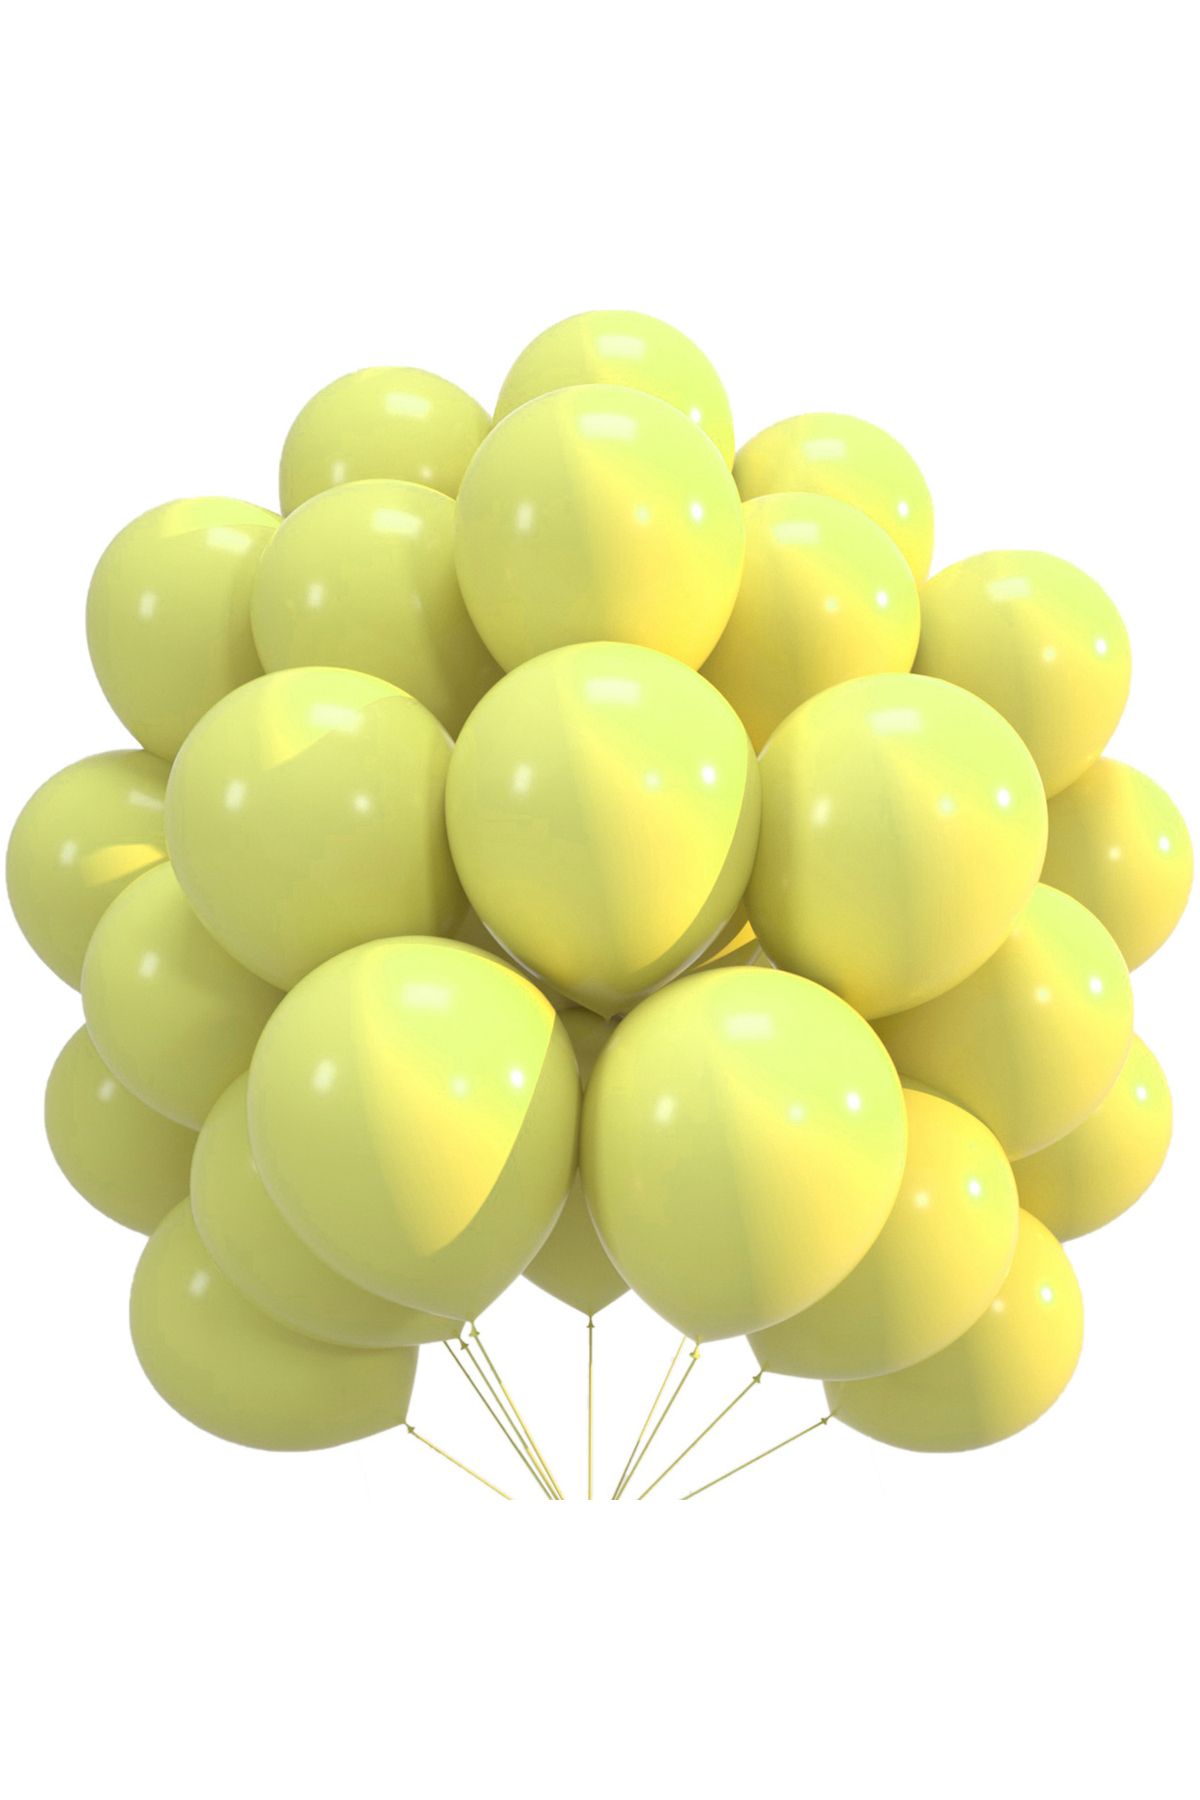 pazariz Lateks Balon Parti Organizasyon Balonu 9/A düğün doğum günü dekorasyon 30 Adet